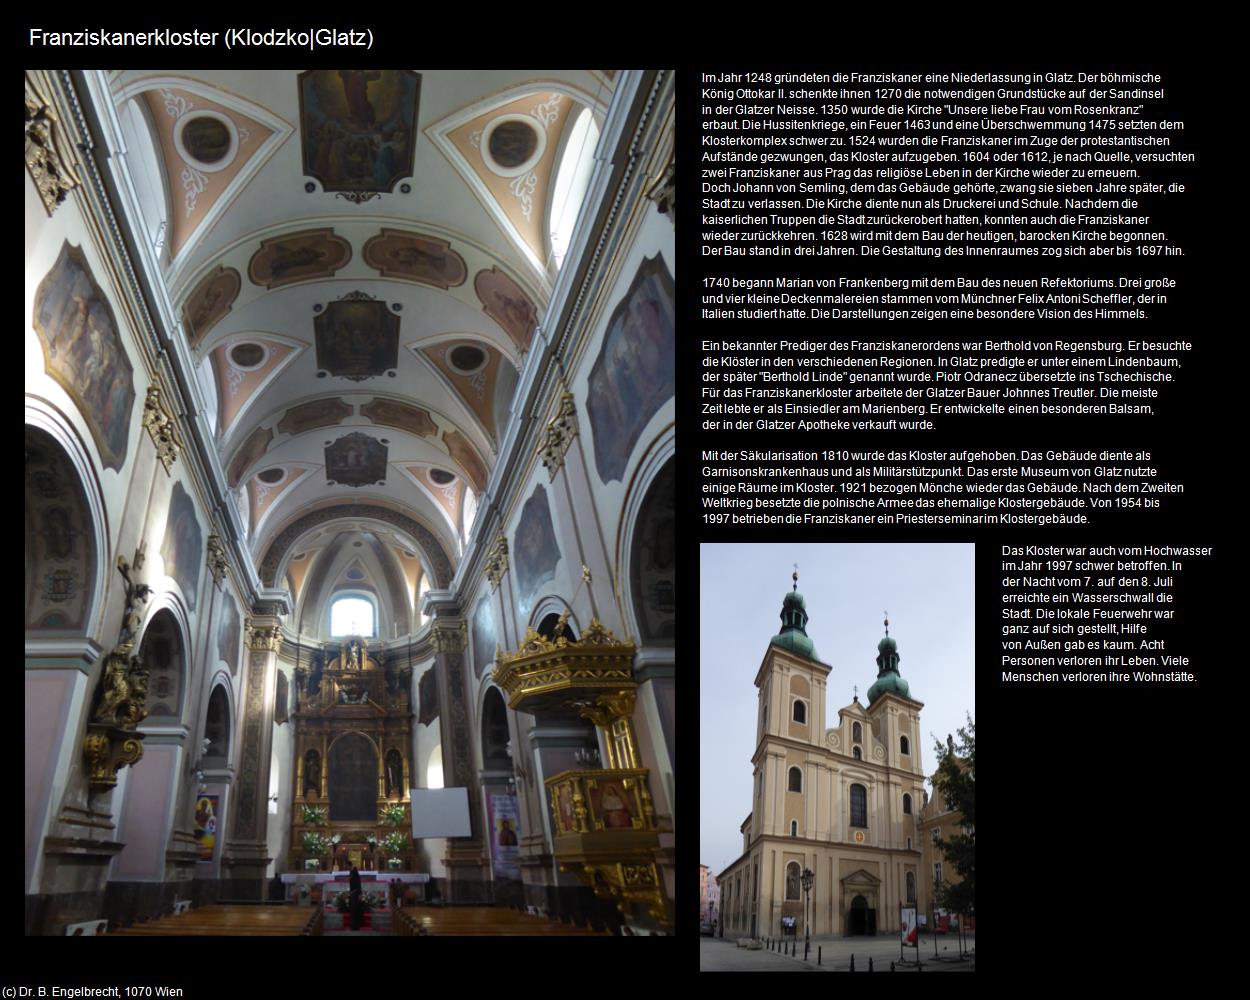 Franziskanerkloster (Klodzko|Glatz) in POLEN-Schlesien